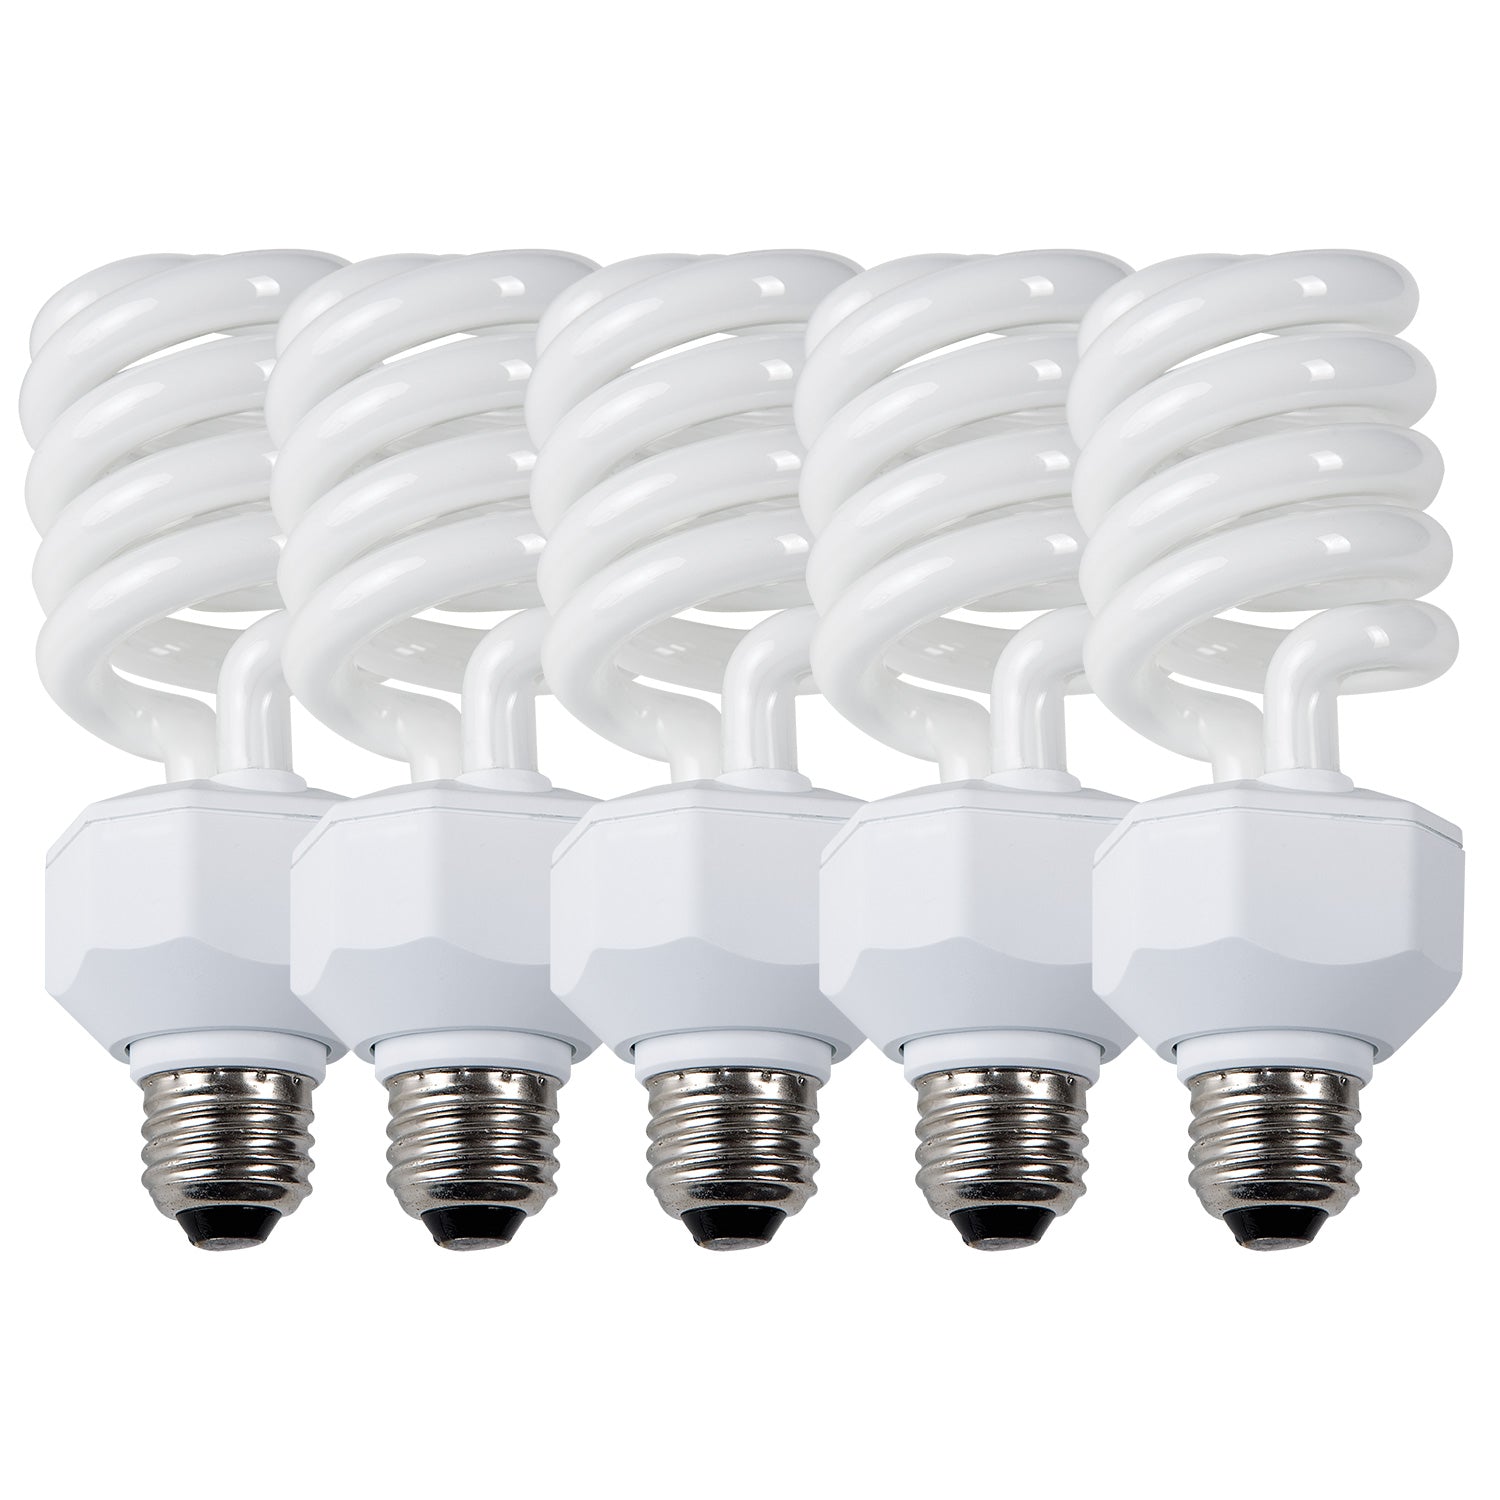 Daylight Fluorescent Bulbs (27-watt, 5-pack)